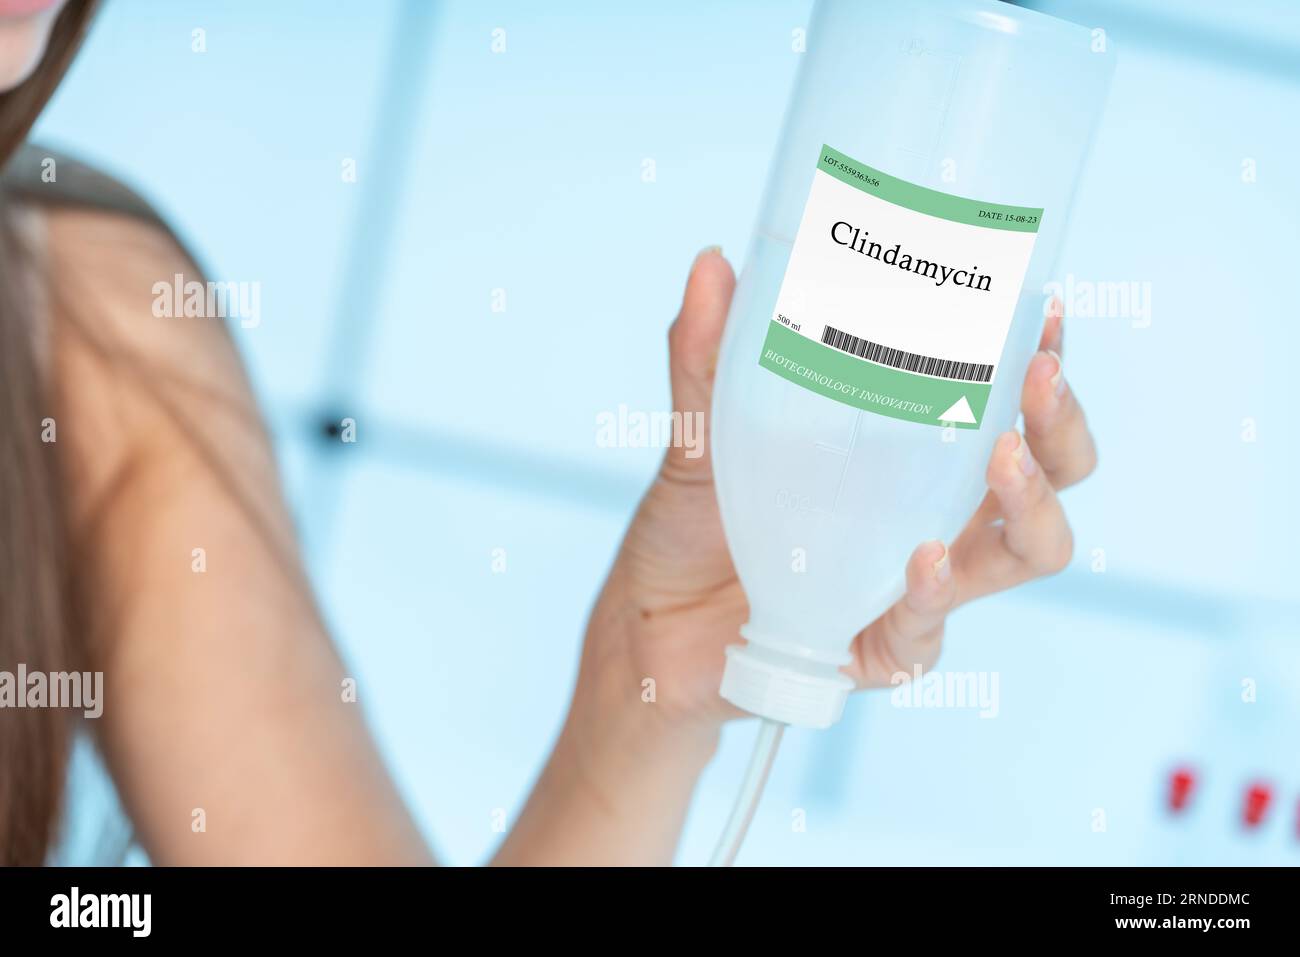 Clindamycin: Ein Antibiotikum zur Behandlung von anaeroben und grampositiven bakteriellen Infektionen. Stockfoto